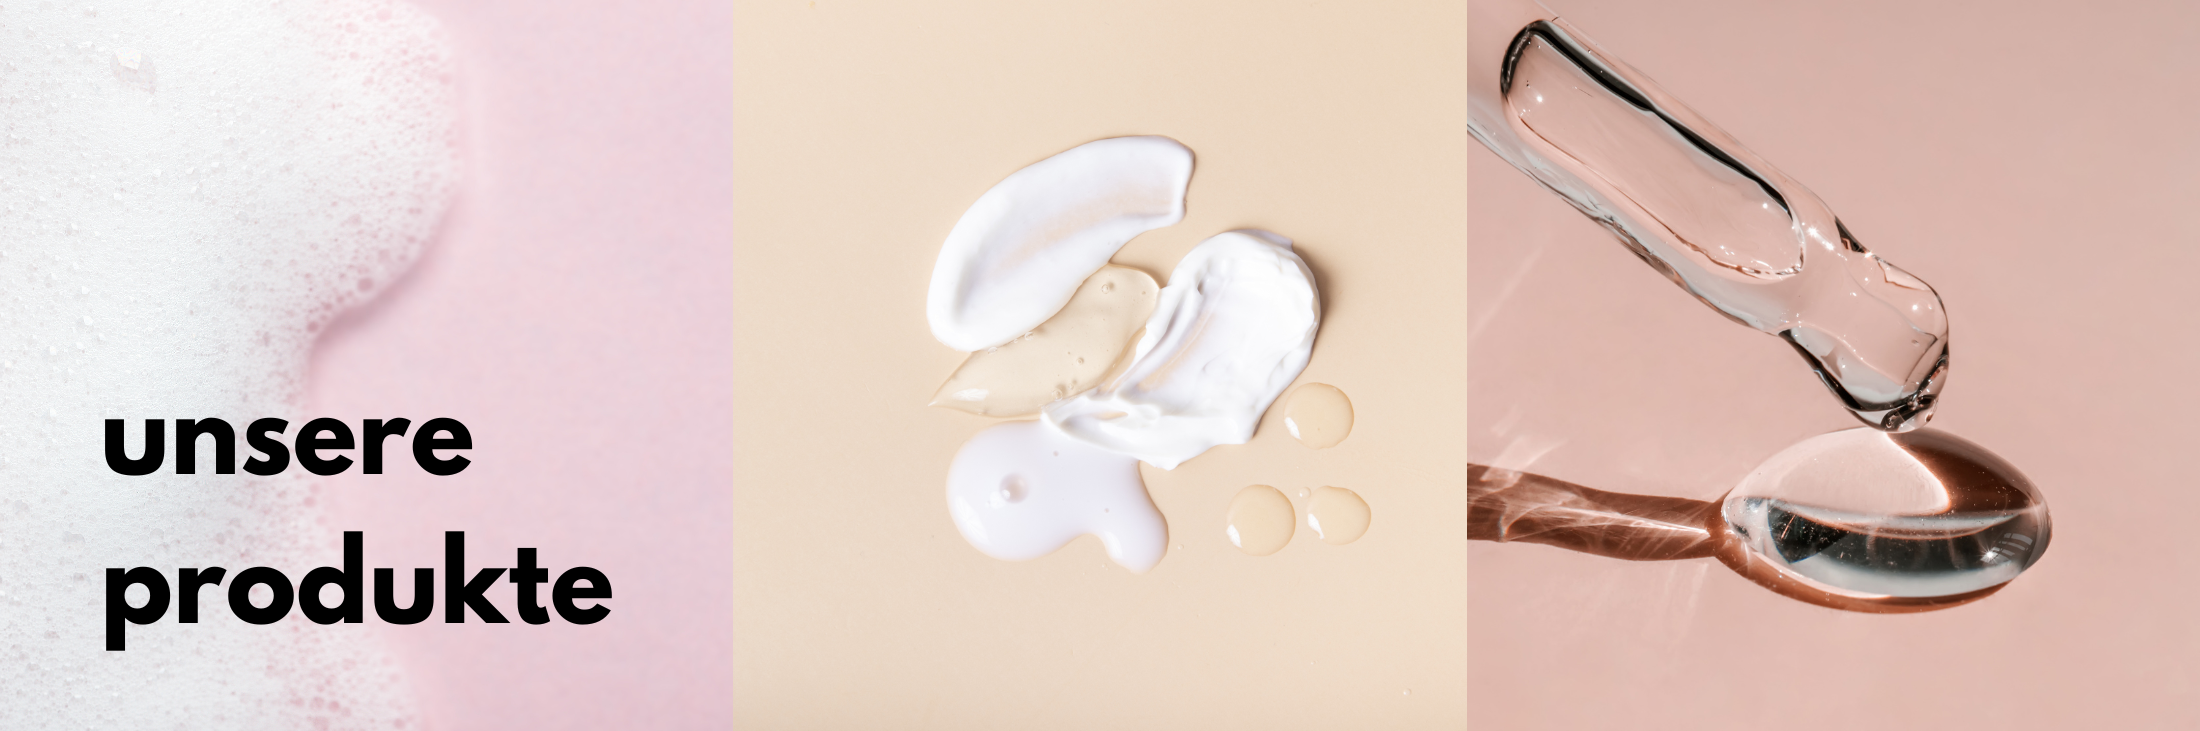 Abbildung von drei verschiedene Texturen von kosmetischen Produkten – Schaum, Creme, Serum.